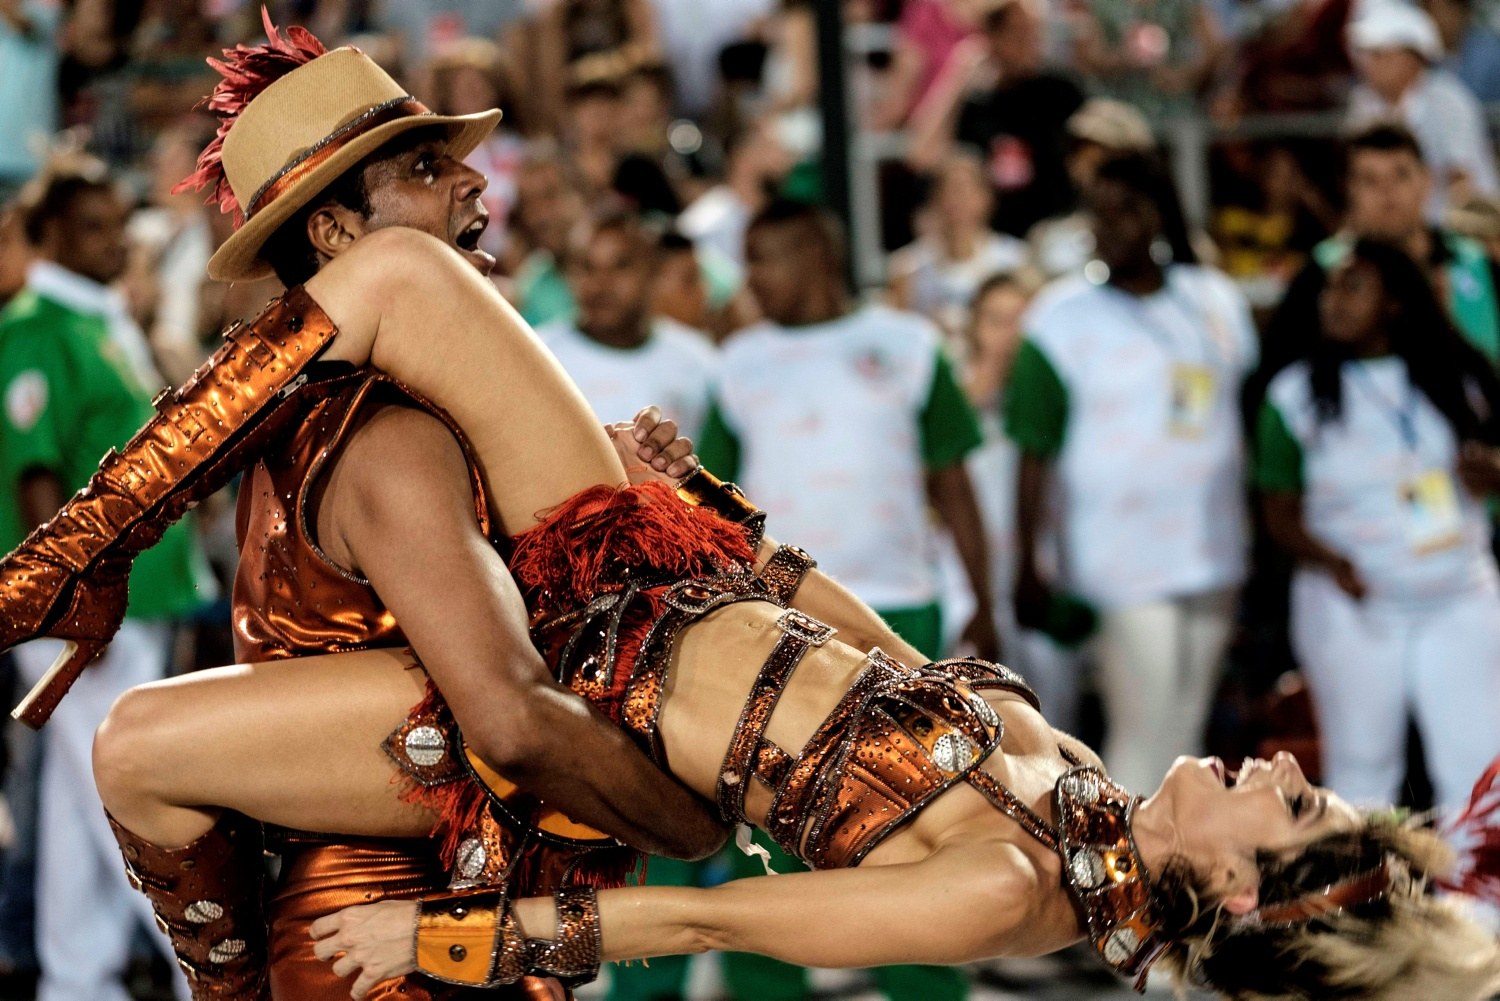 оргия на карнавале в бразилии порно фото 42